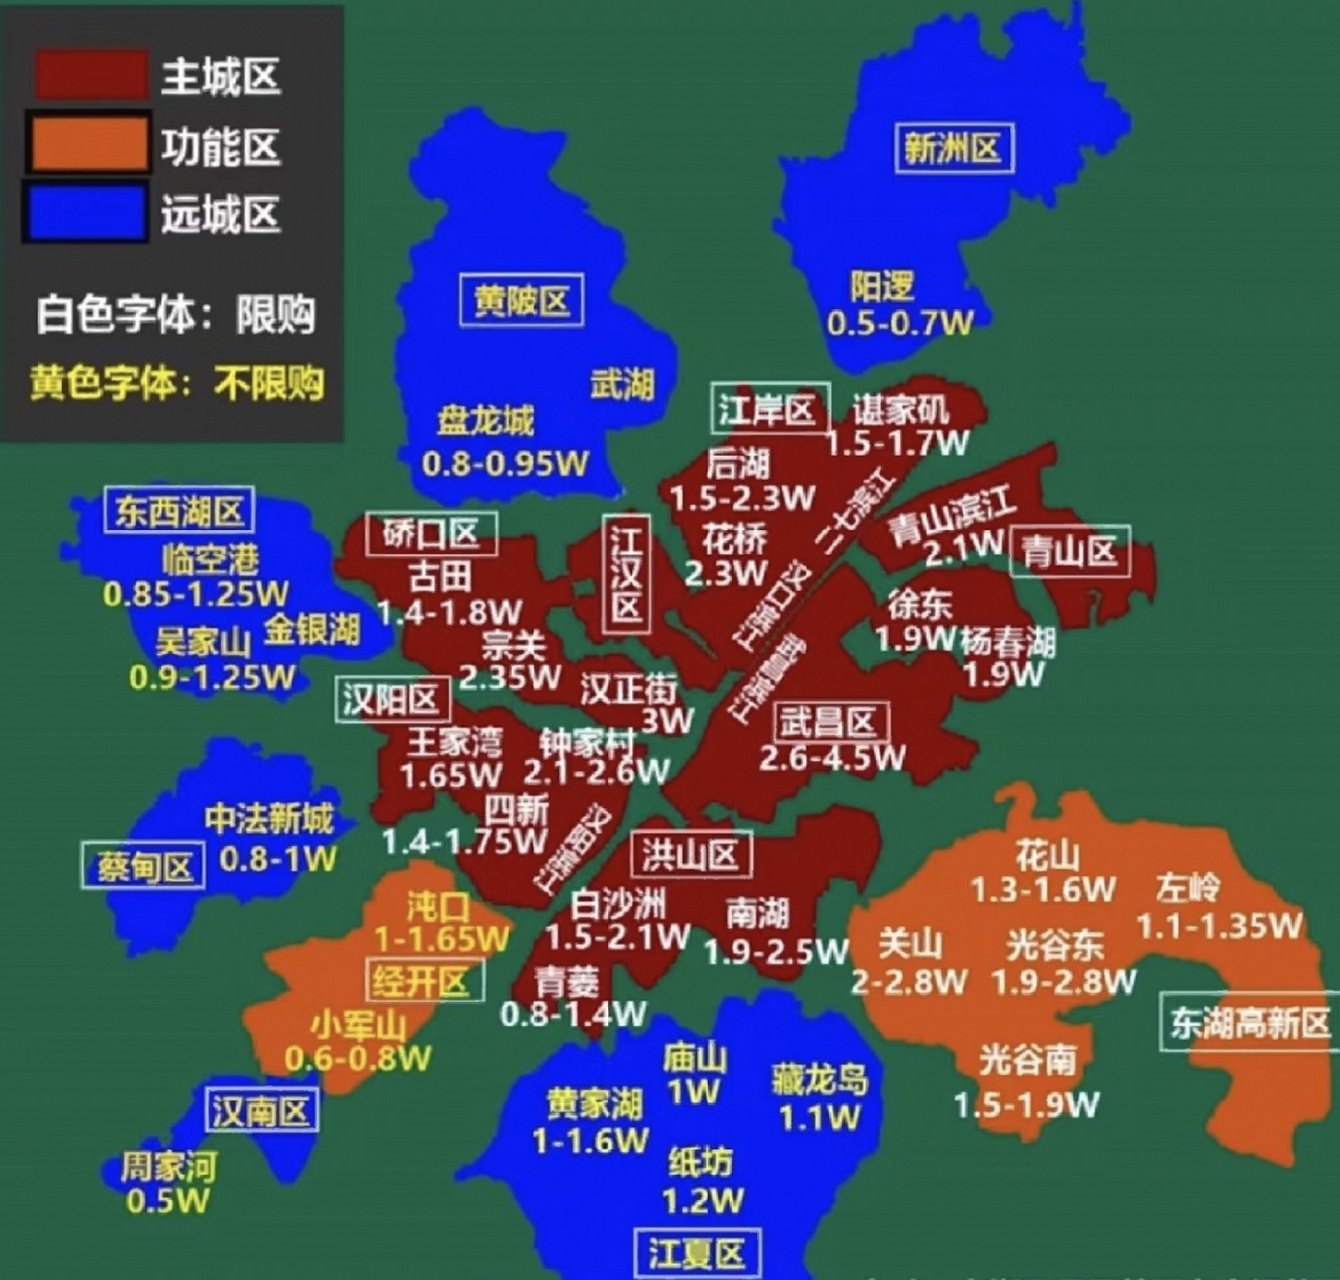 武汉区域板块分布图图片